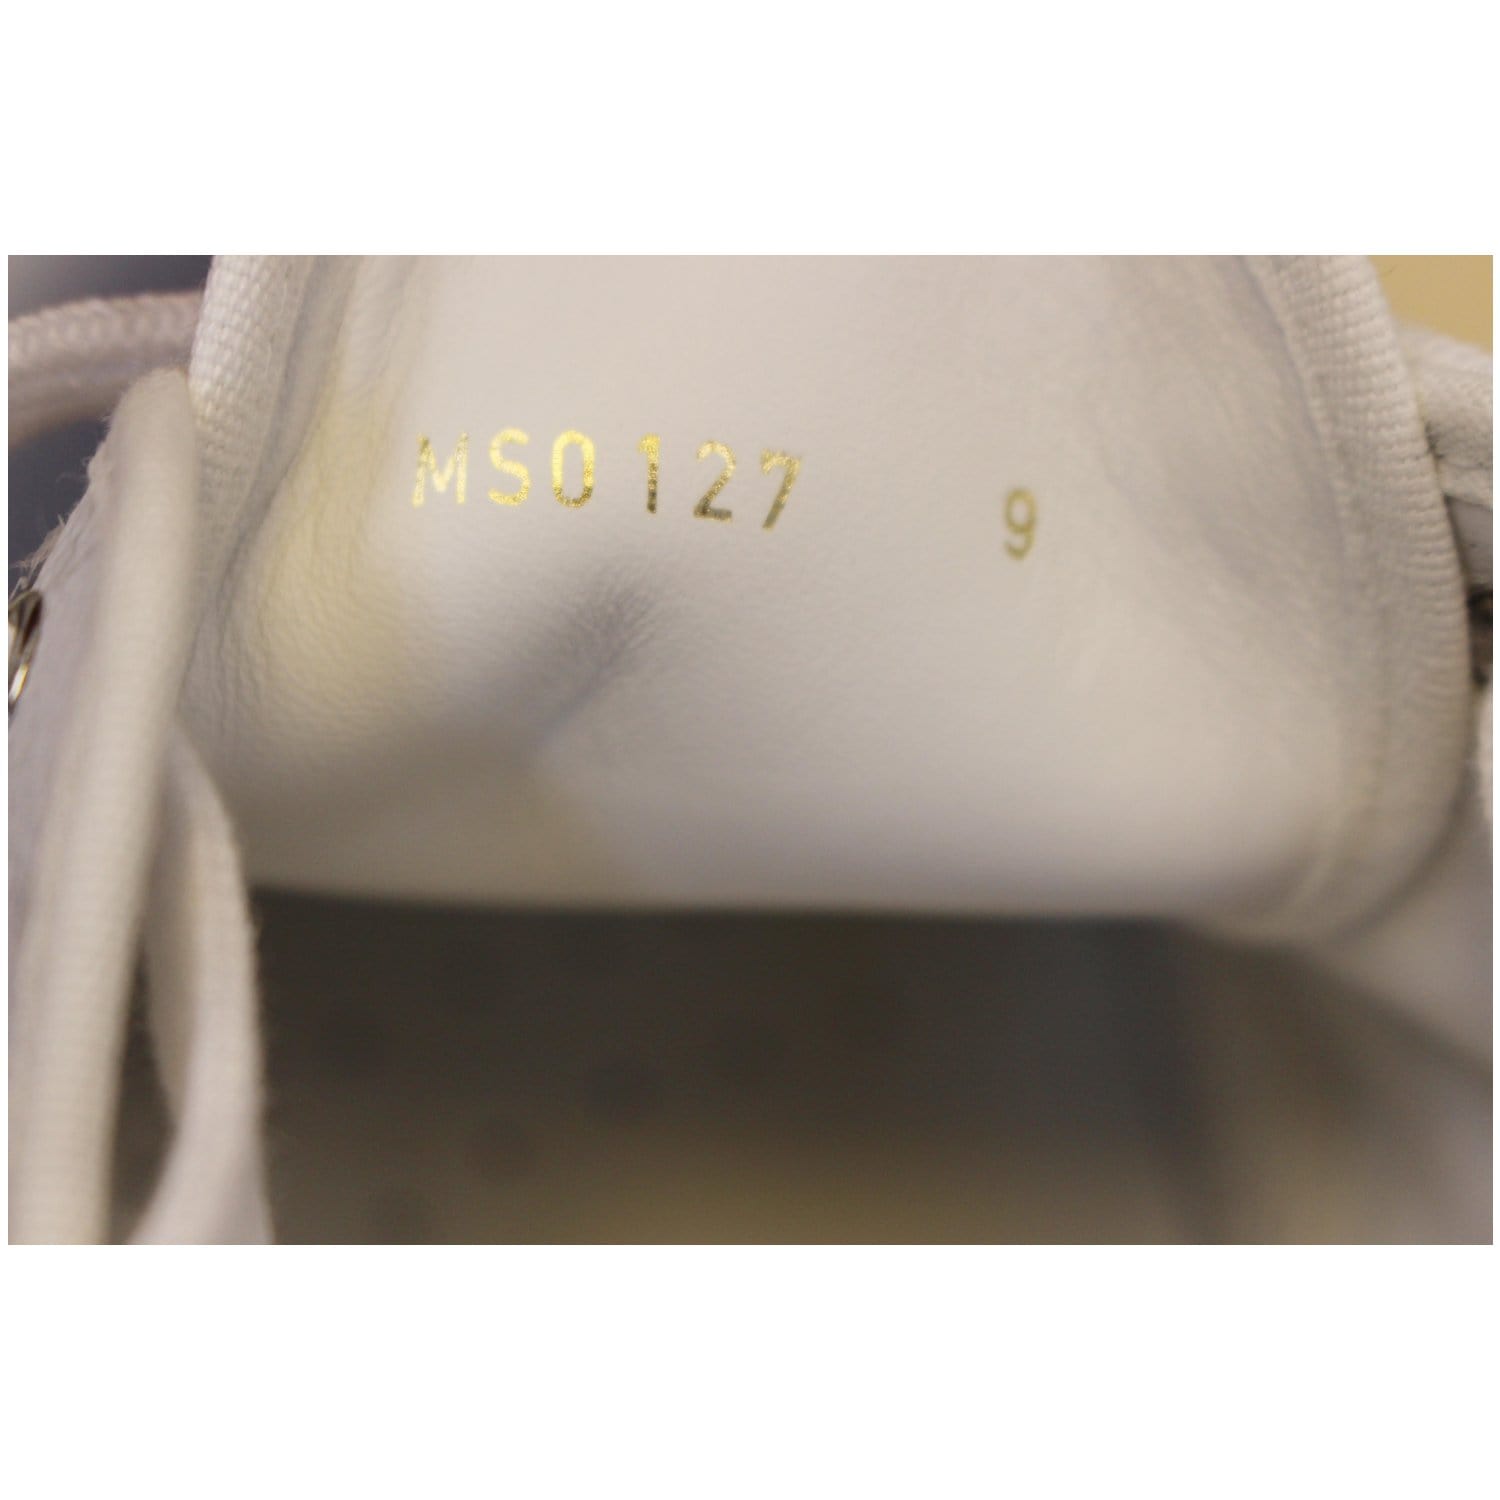 Louis Vuitton - Monogram Glaze Trocadero Sneakers – eluXive